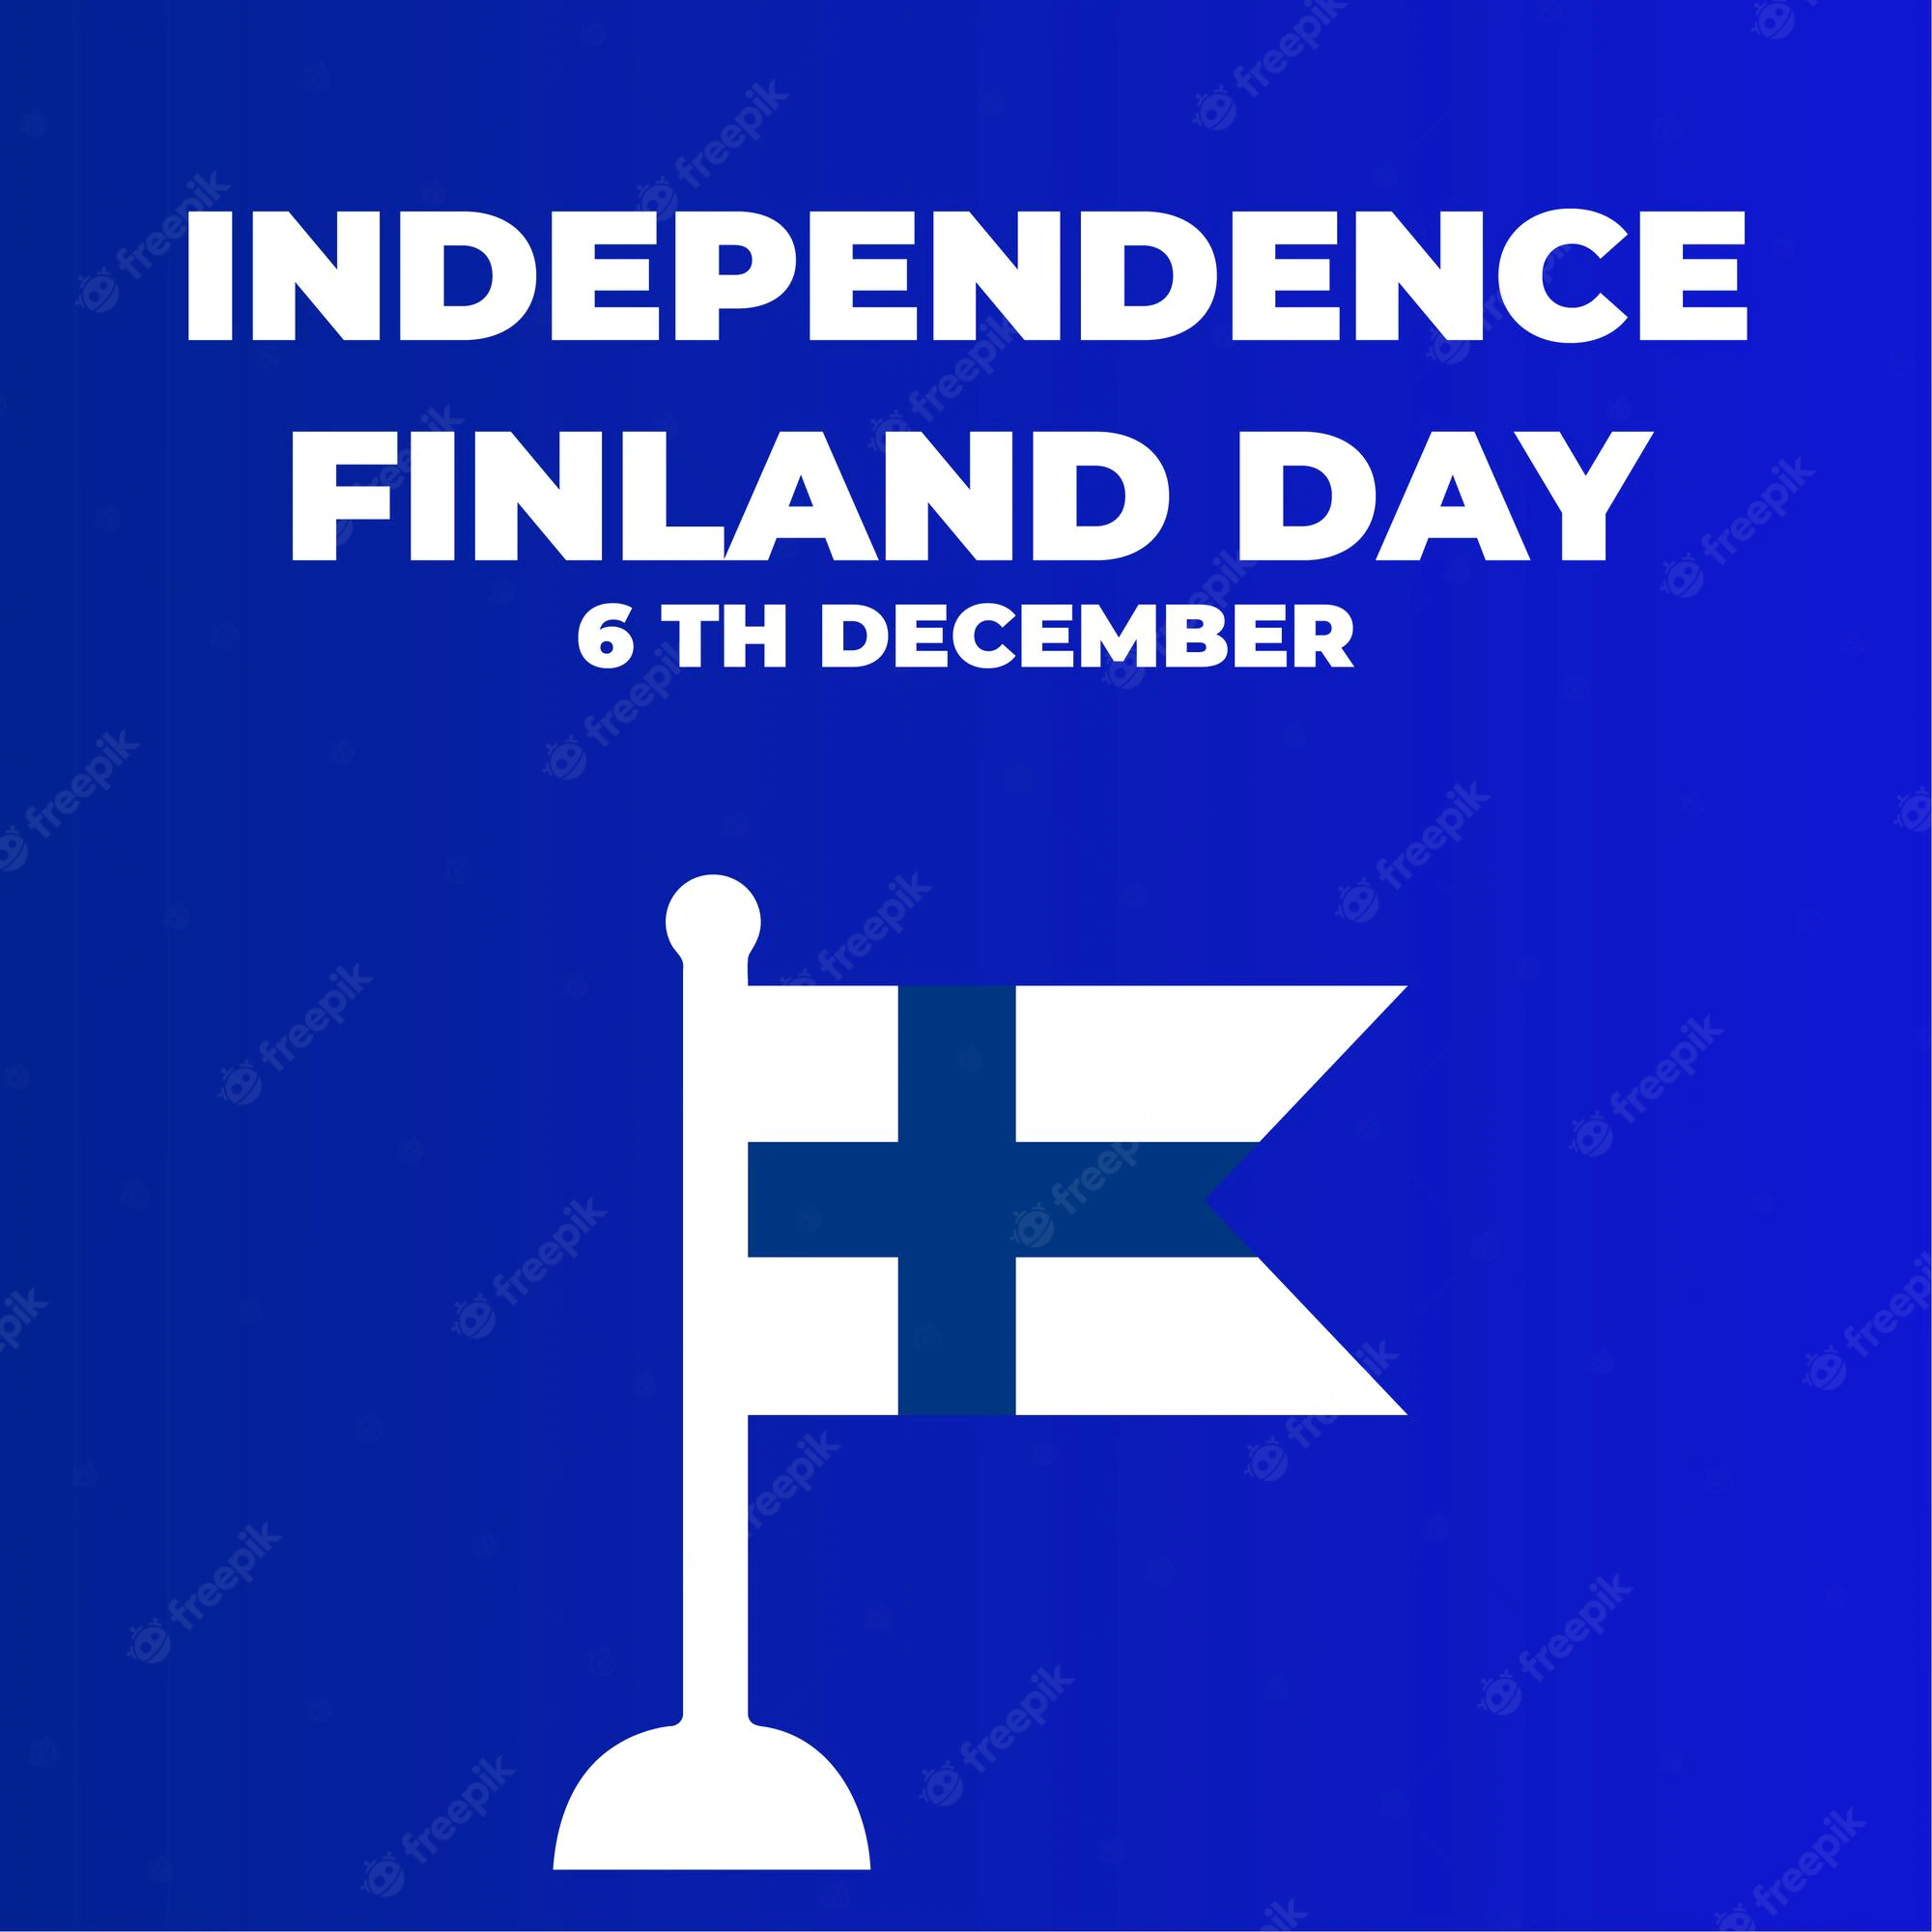 फिनलंडचा स्वातंत्र्यदिन २०२२: शुभेच्छा, संदेश, शुभेच्छा, कोट्स, HD प्रतिमा, म्हणी, क्लिपार्ट आणि मथळे